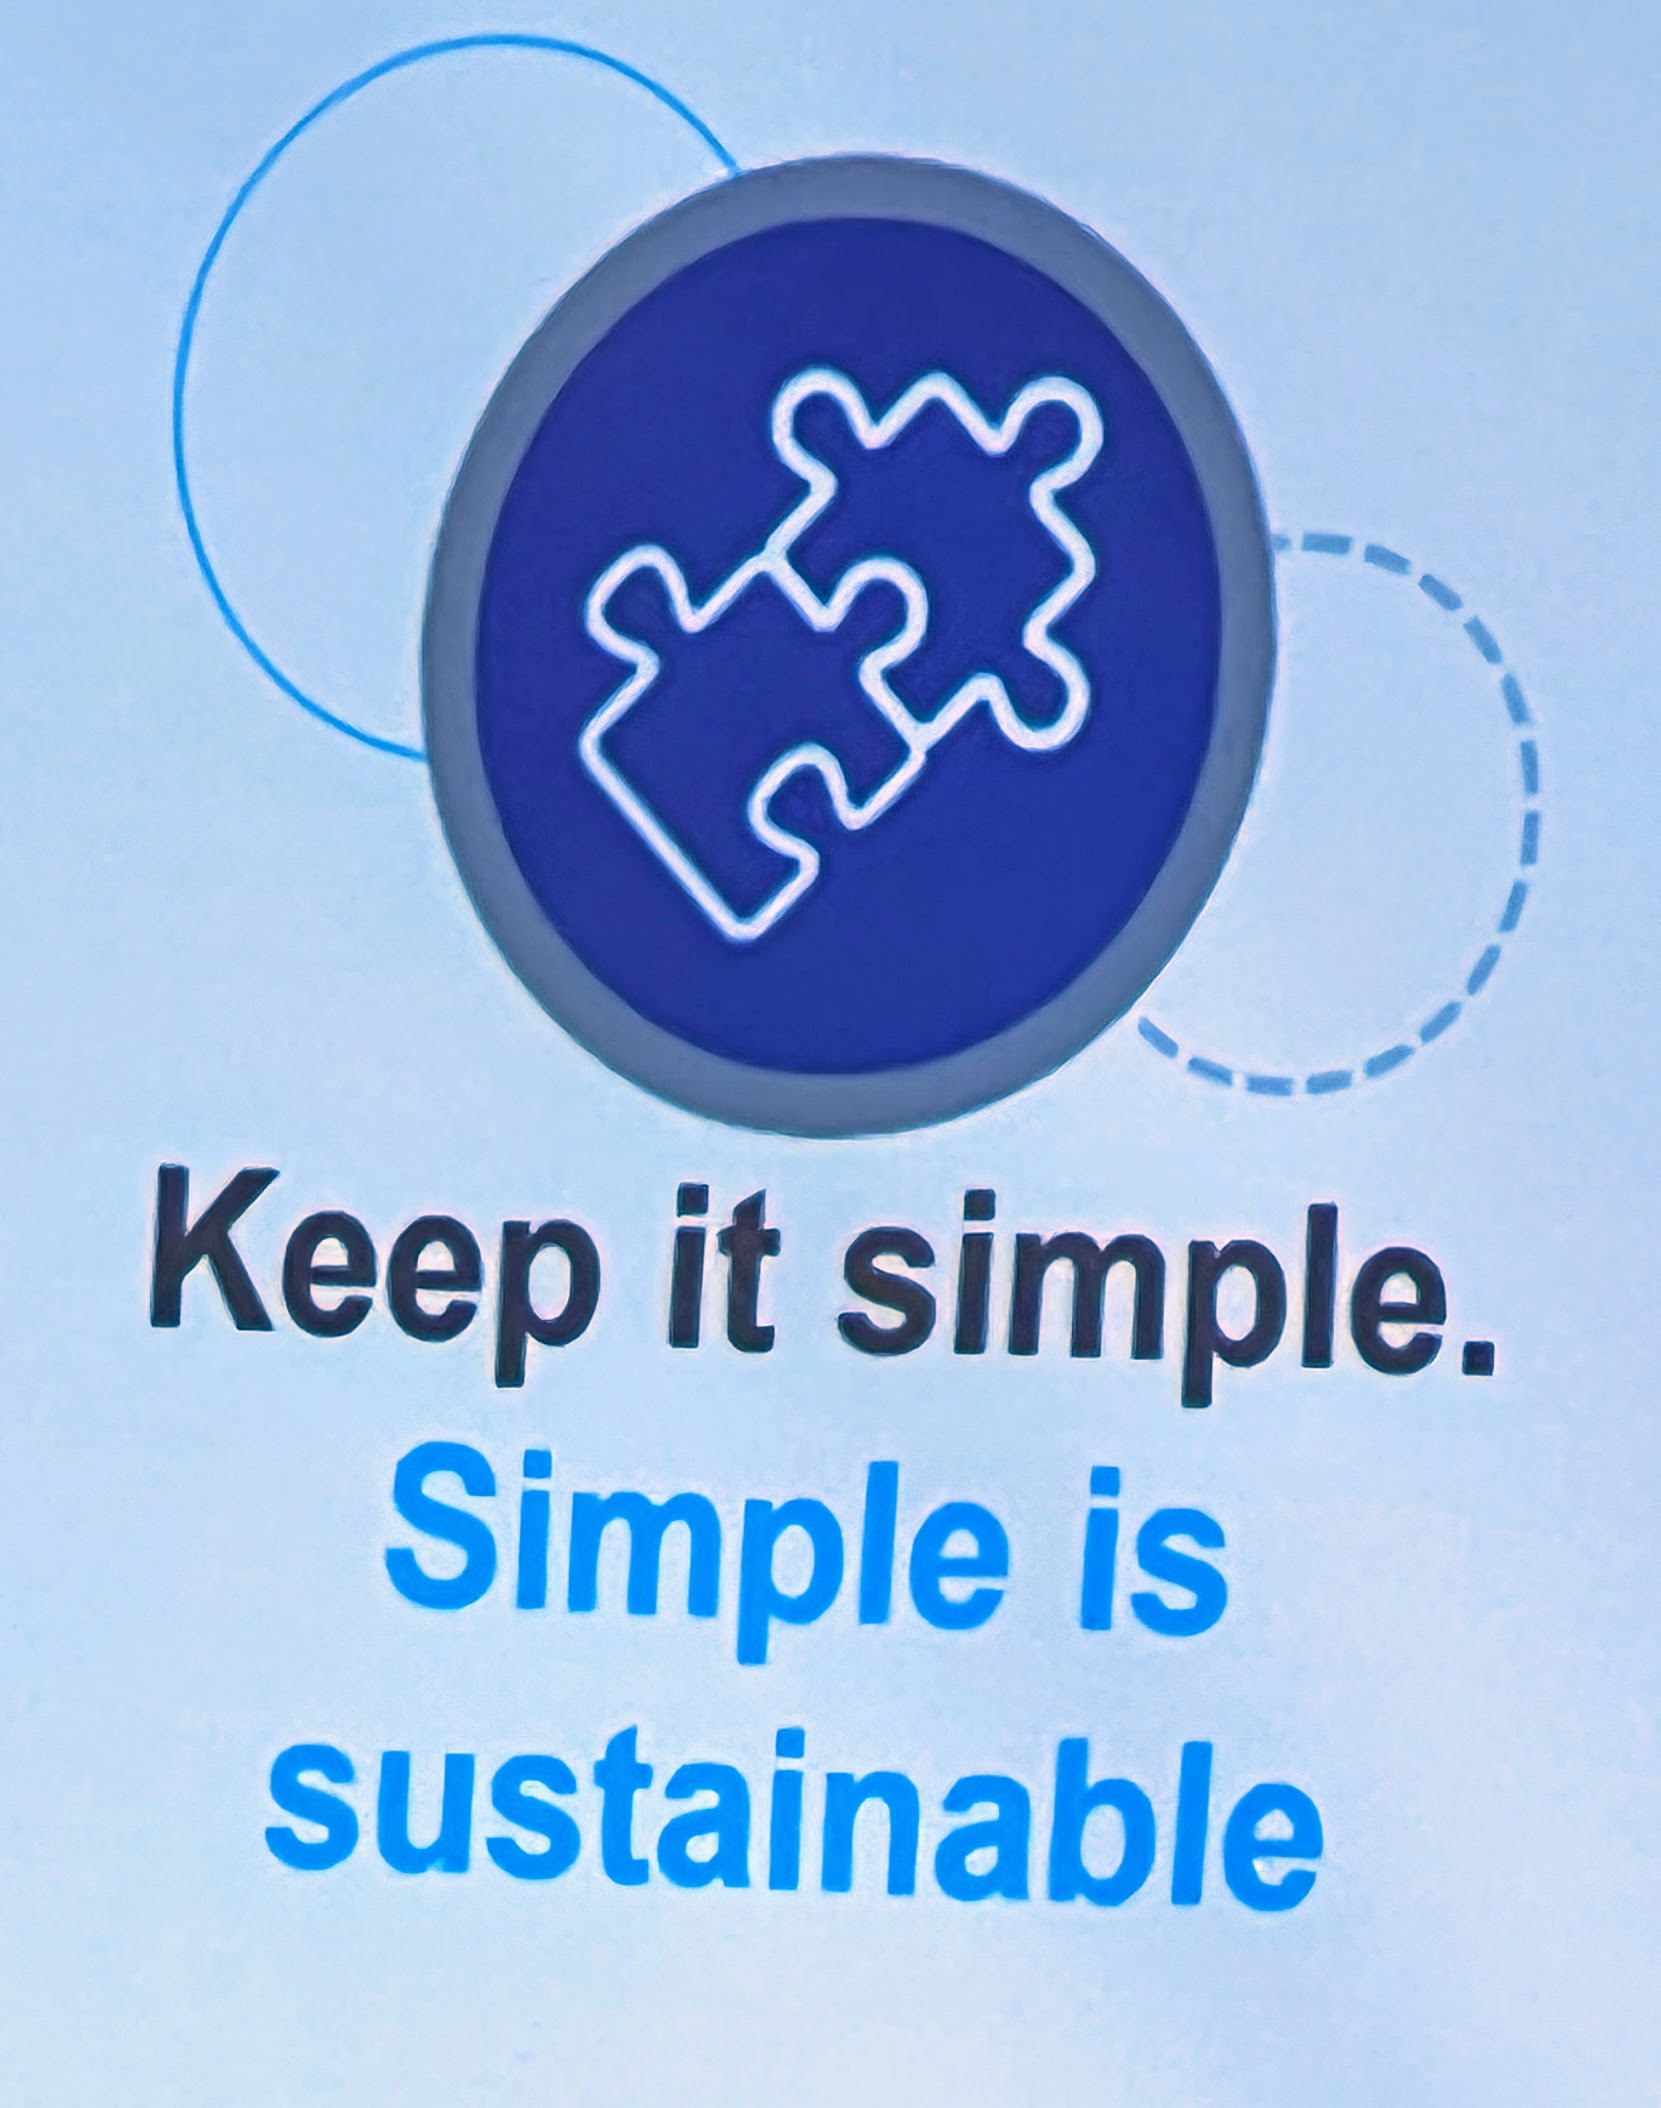 Keep it simple. Simple is sustainable.